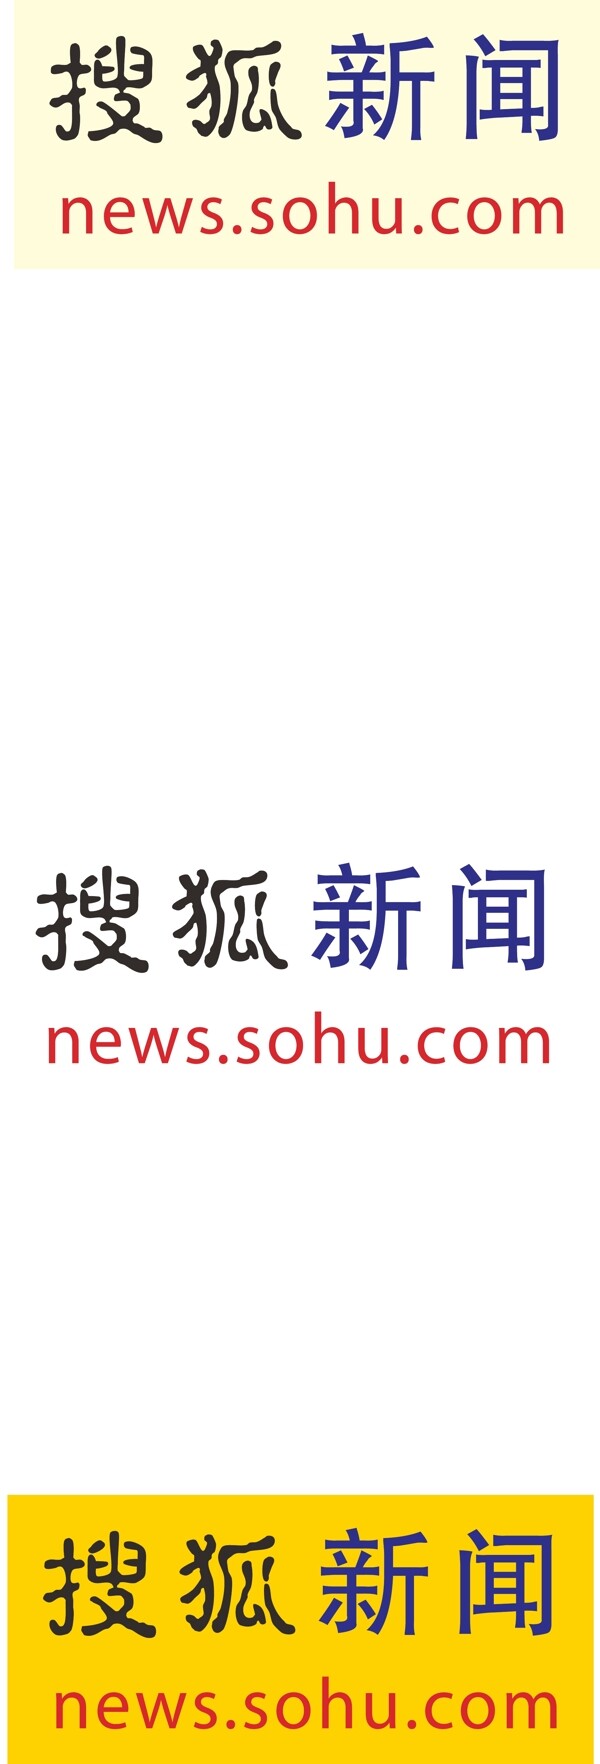 搜狐新闻标志图片